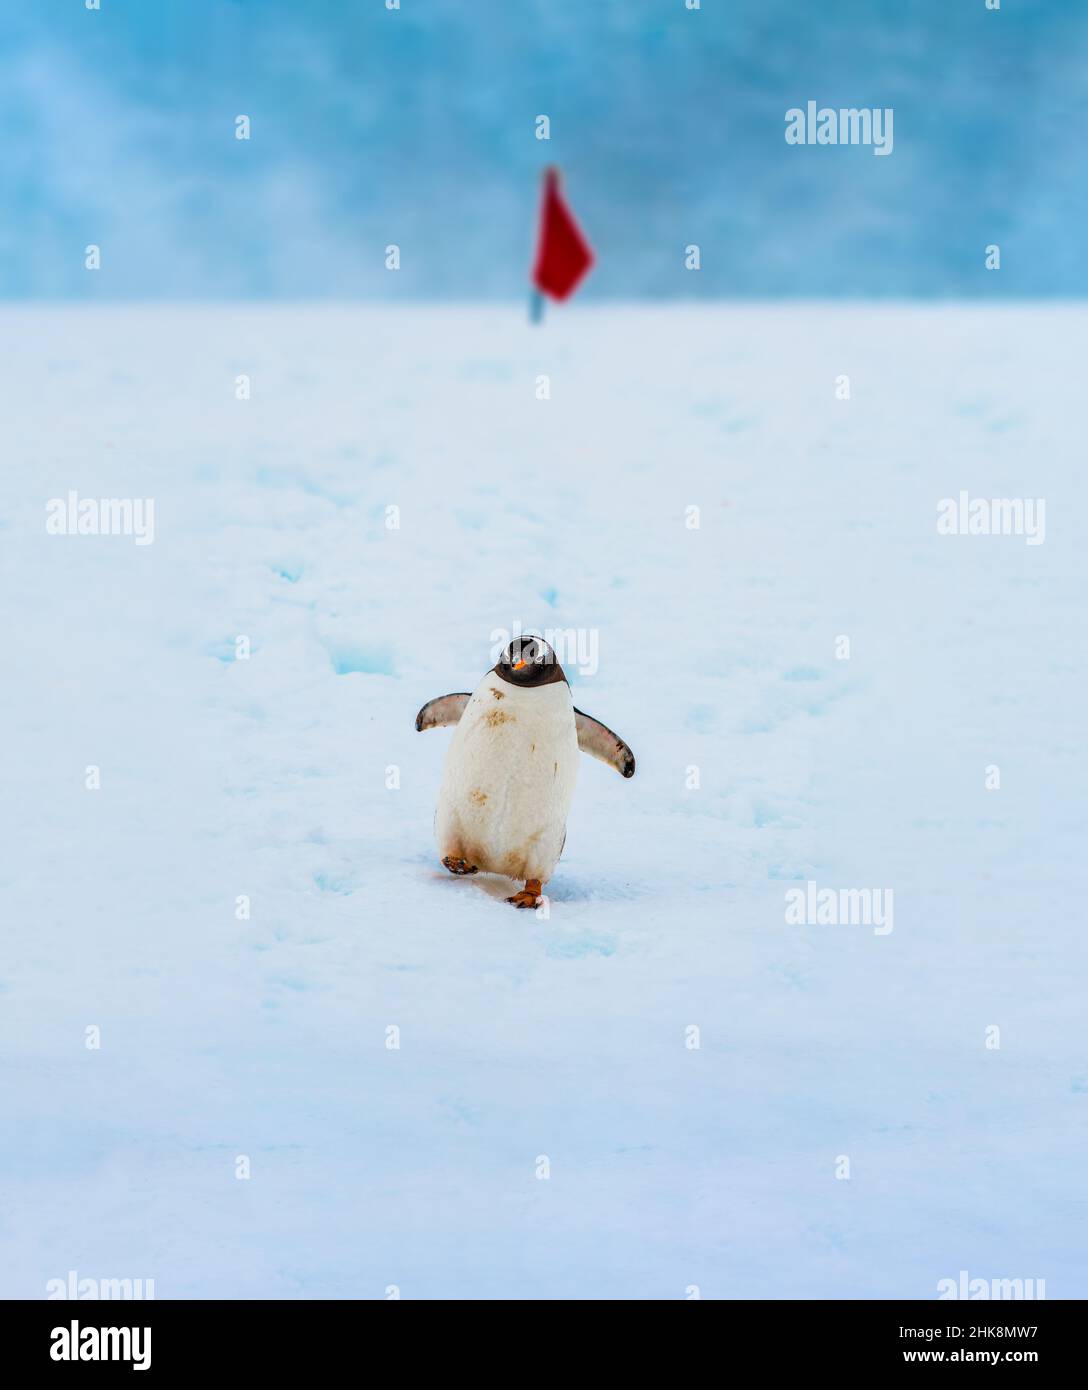 Pinguino Gentoo nativo di isole sub-antartiche dove temperature fredde consentono condizioni ideali di allevamento, foraggio e nidificazione. Foto Stock